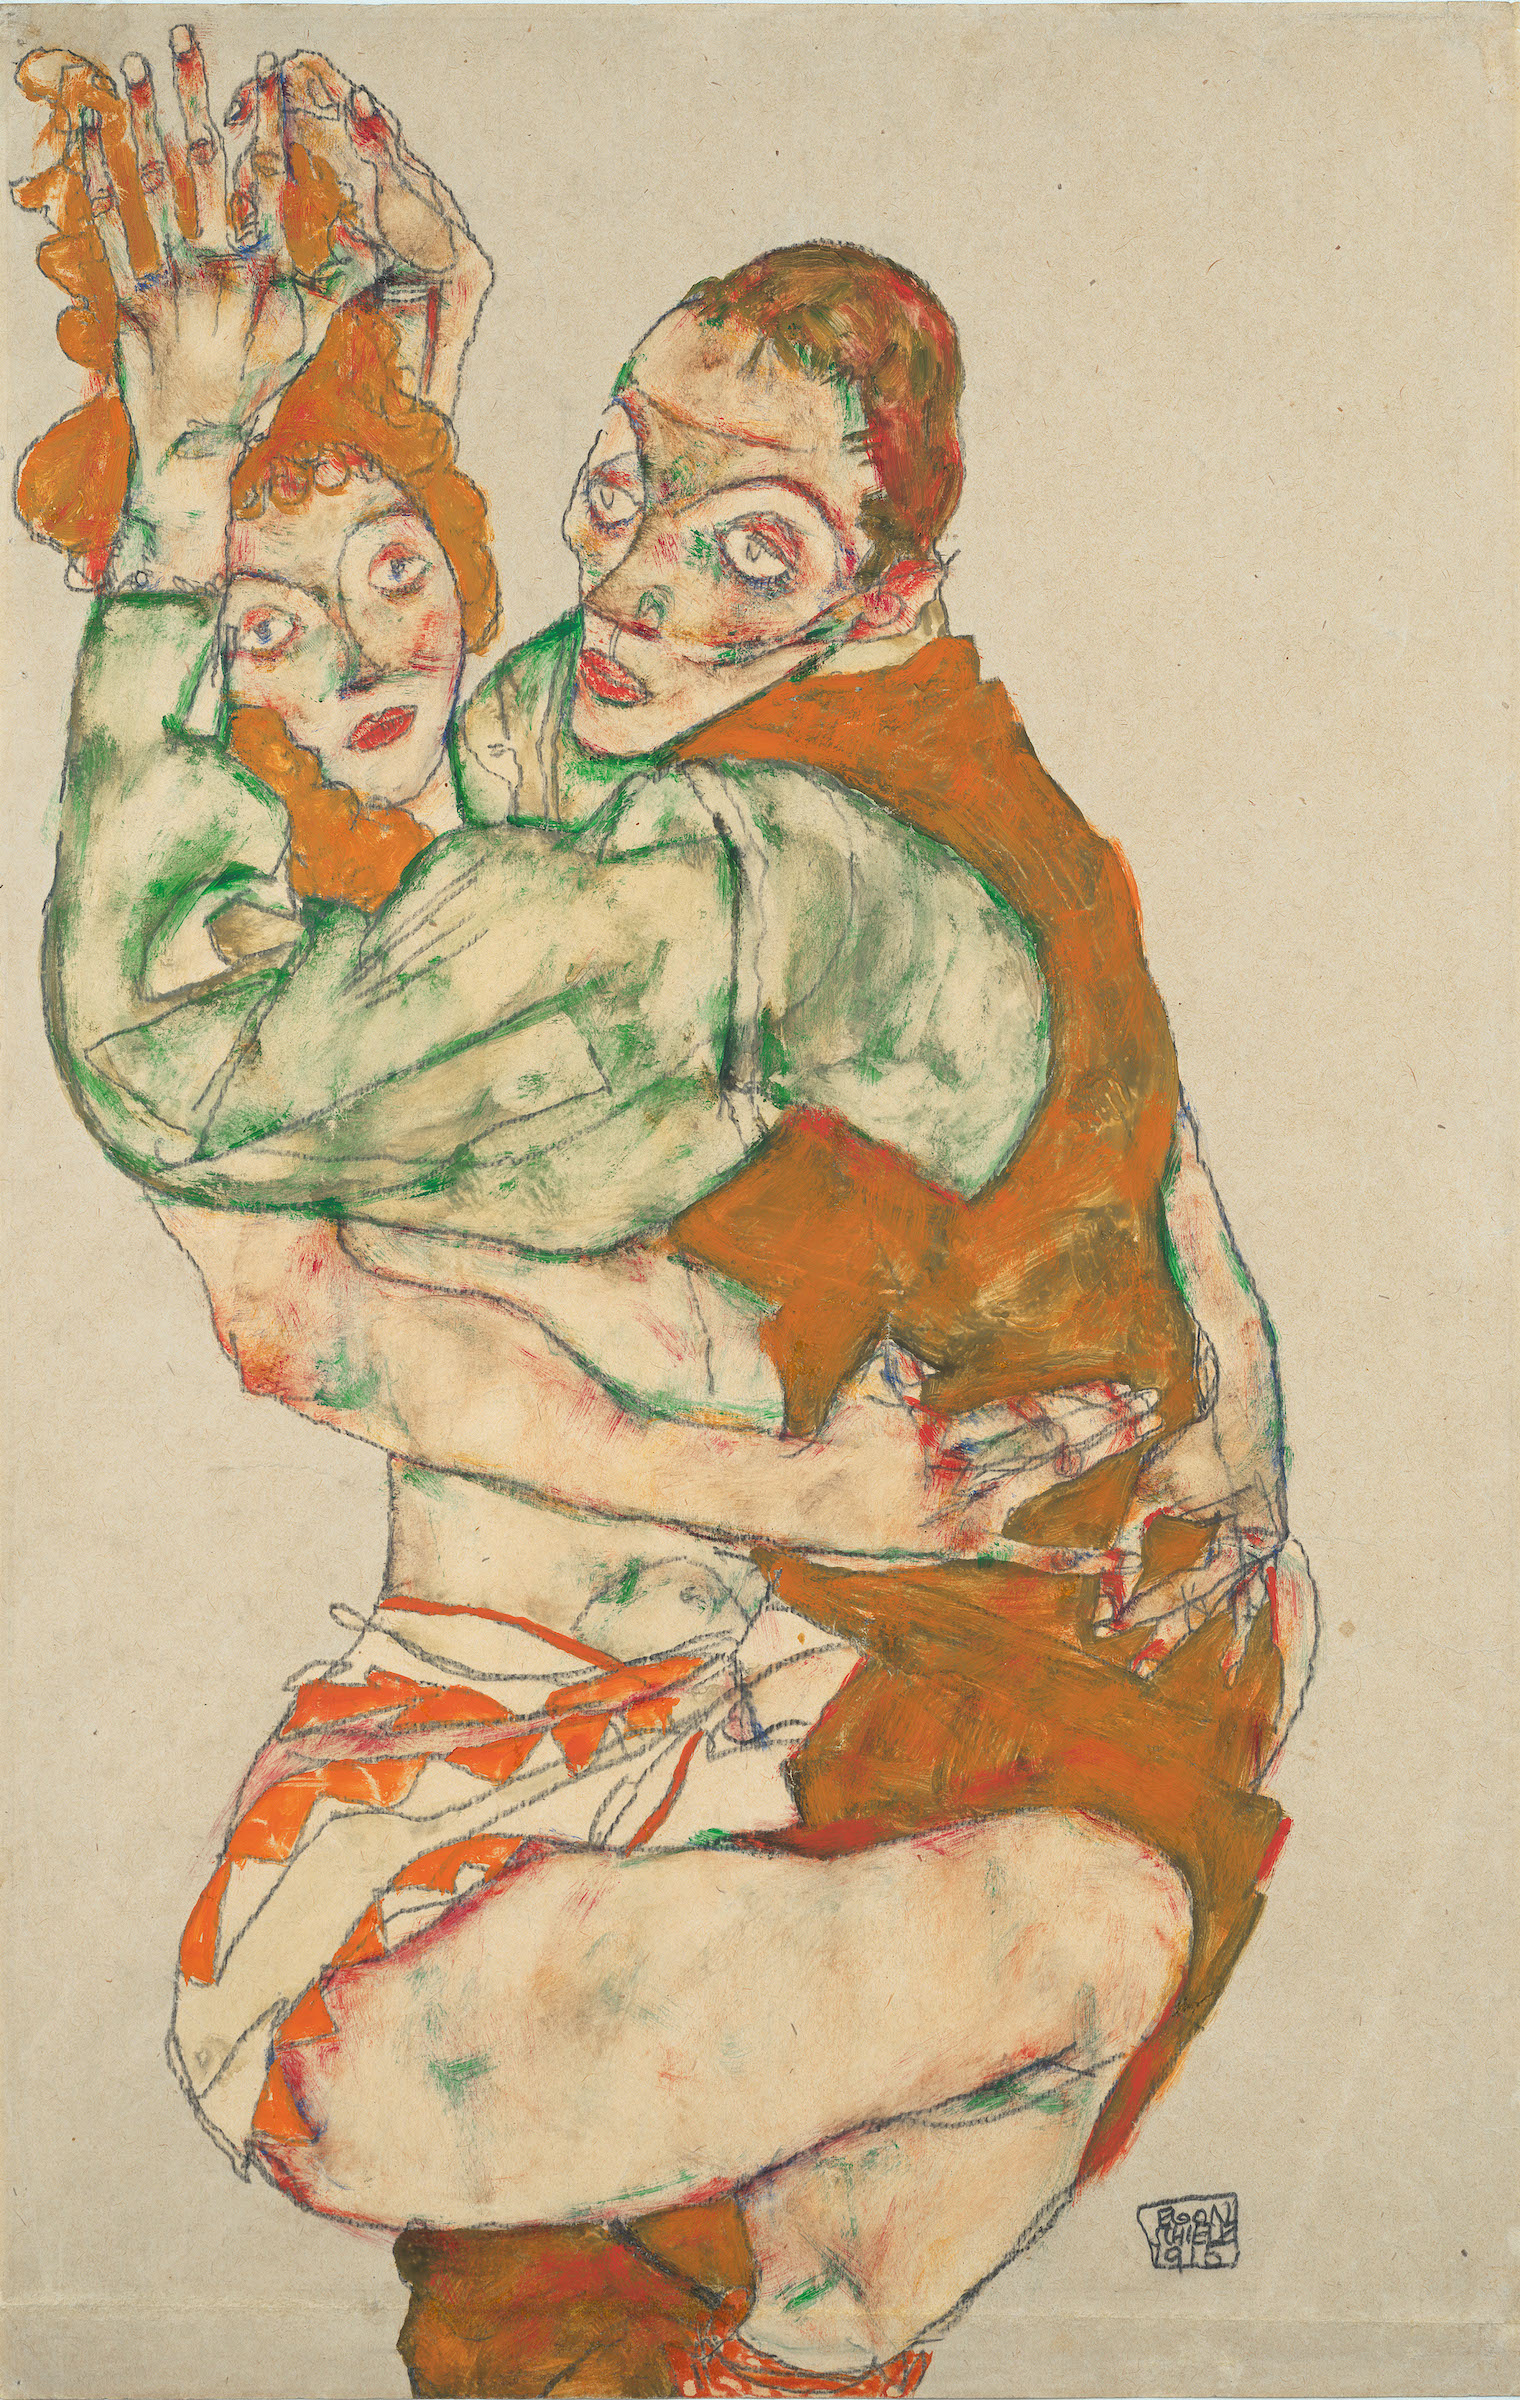 Akt miłosny by Egon Schiele - 1915 - 31,7 x 49,6 cm 